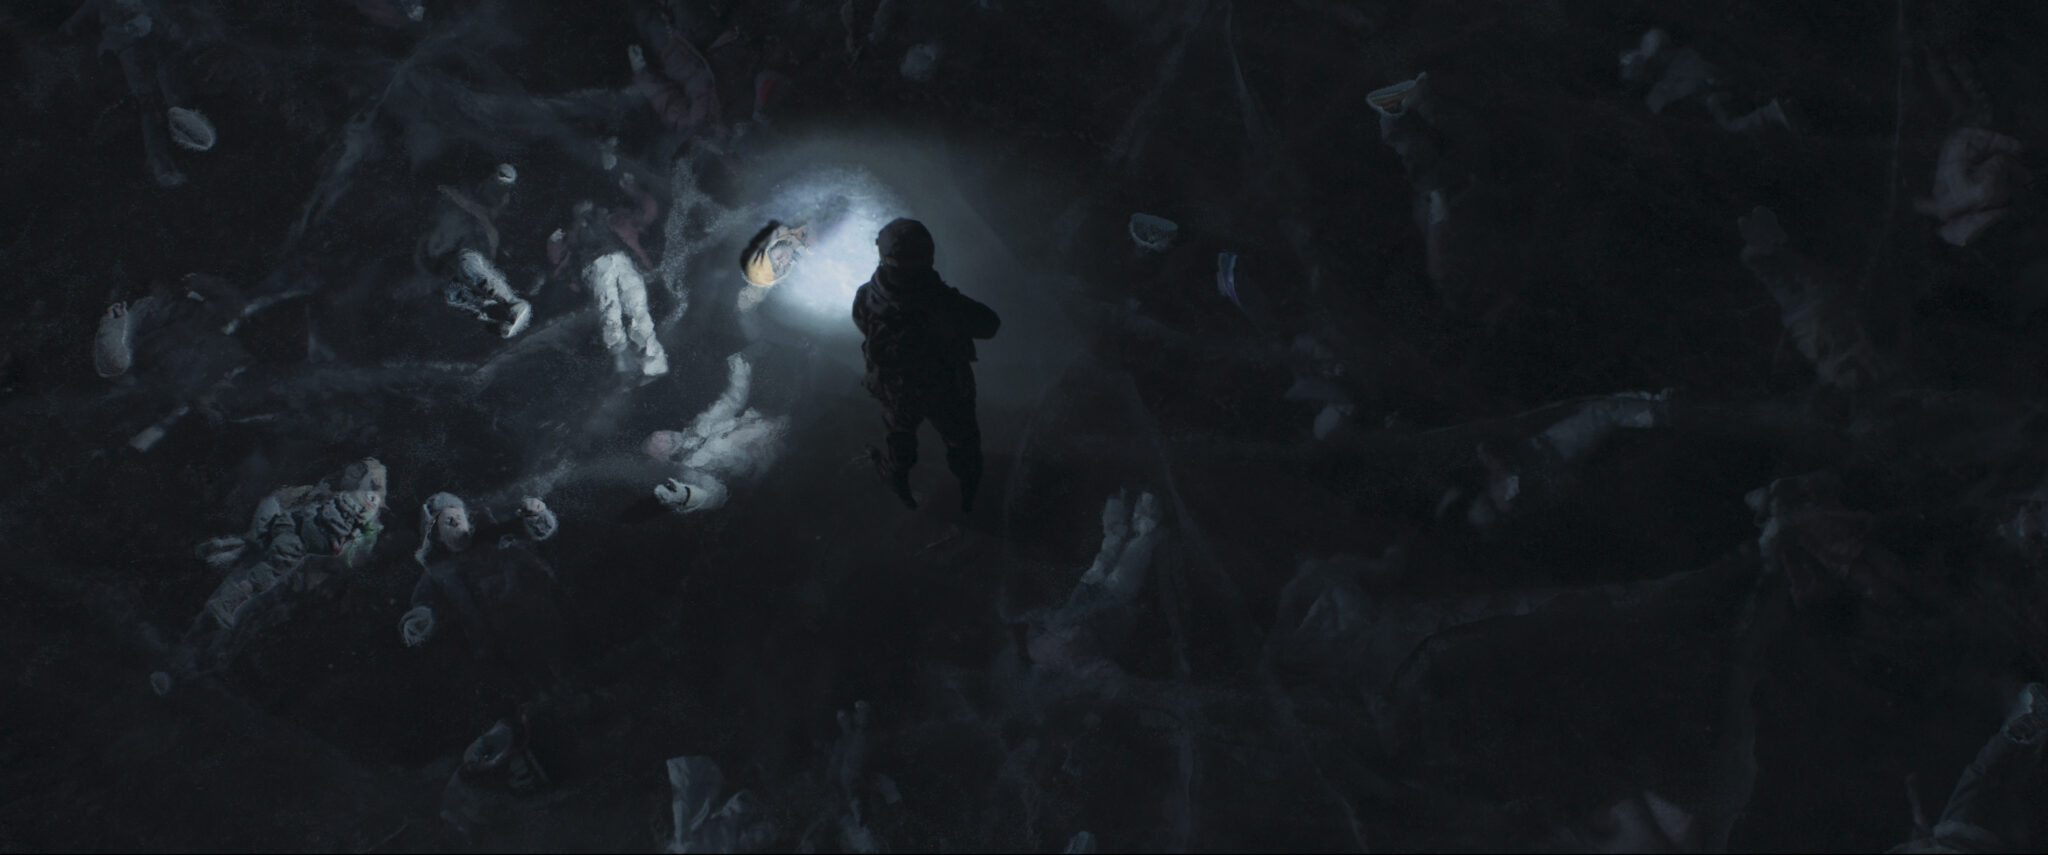 Ein zugefrorener See von oben im Dunkeln. Unter dem Eis sieht man angeleuchtet von einer Taschenlampe zahlreiche tote Körper.